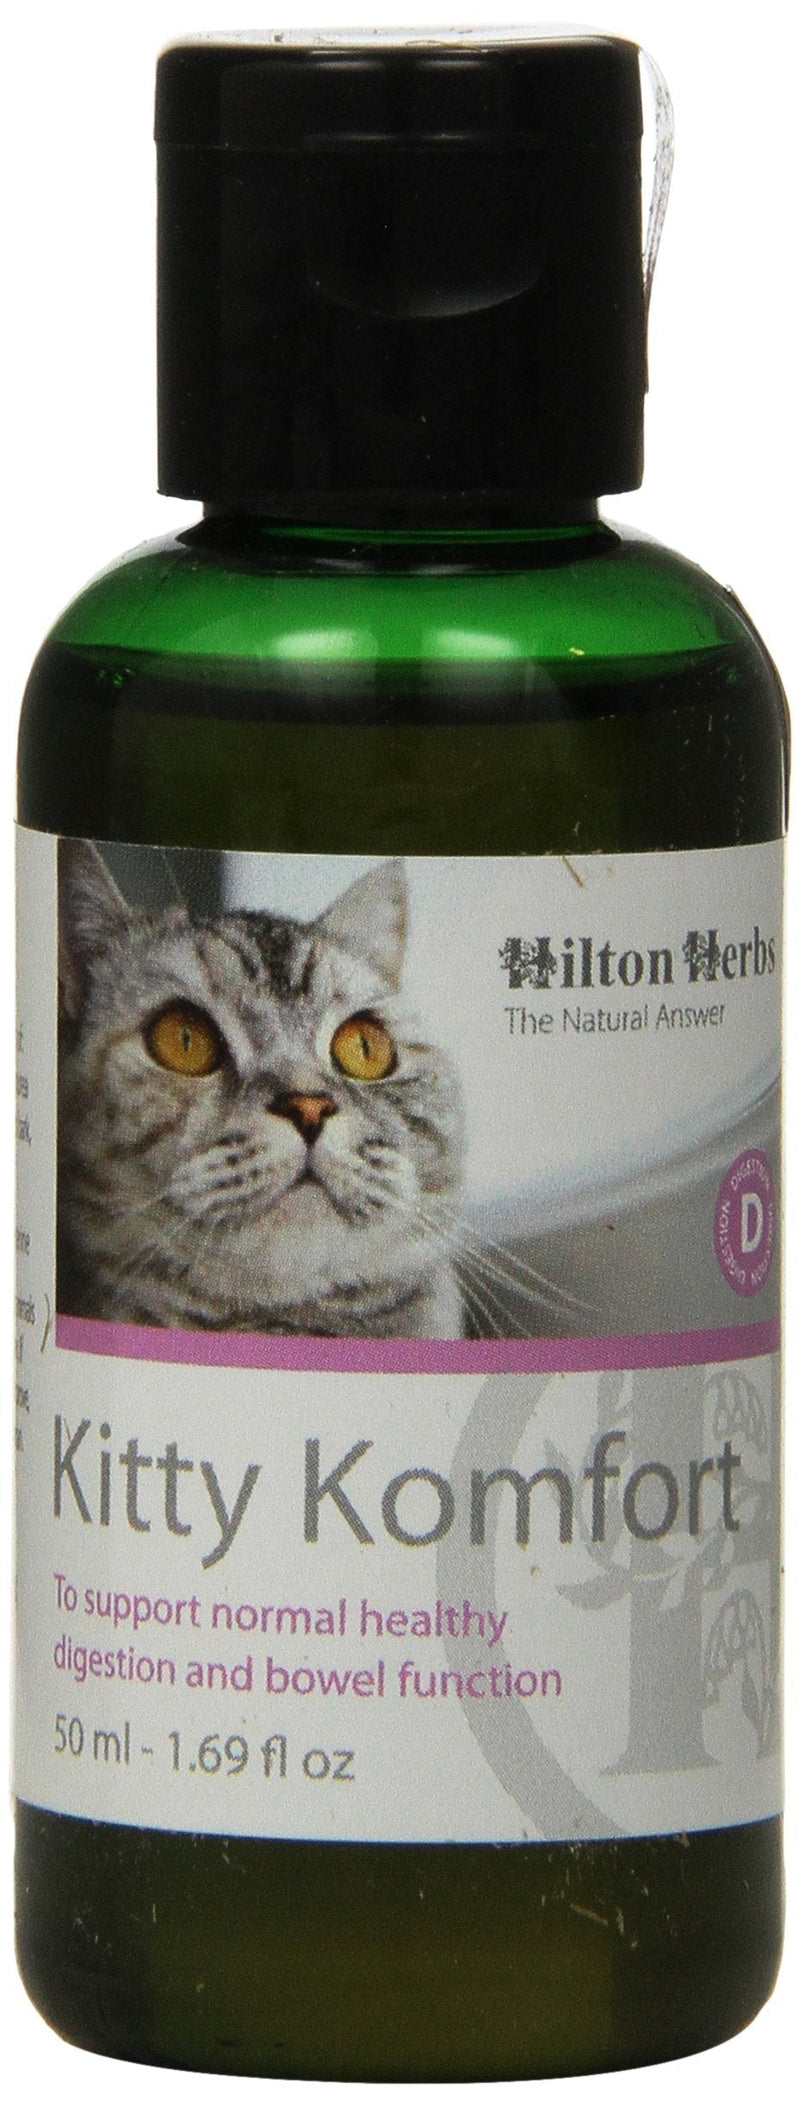 Hilton Herbs Kitty Komfort 50 ml - PawsPlanet Australia